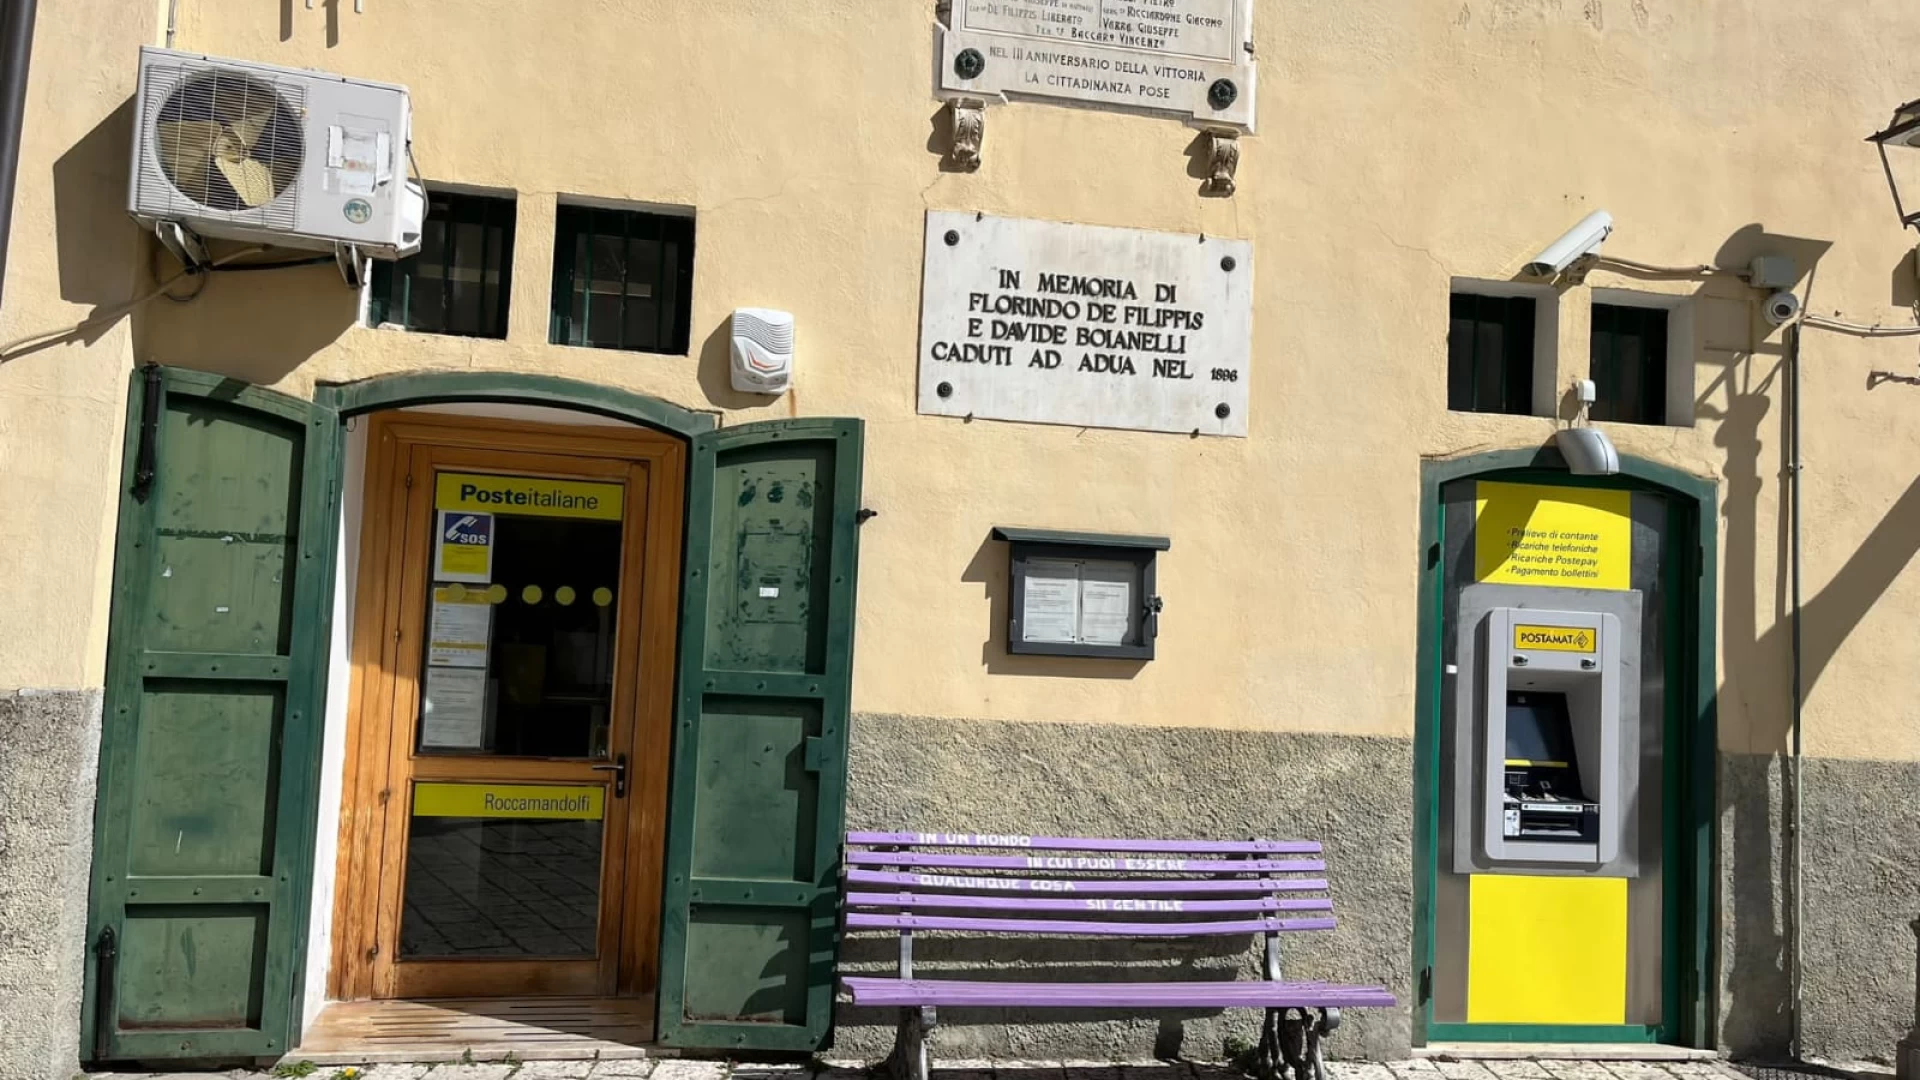 Poste Italiane : a Roccamandolfi e San Pietro Avellana gli uffici postali si preparano ad accogliere i servizi della Pubblica Amministrazione.